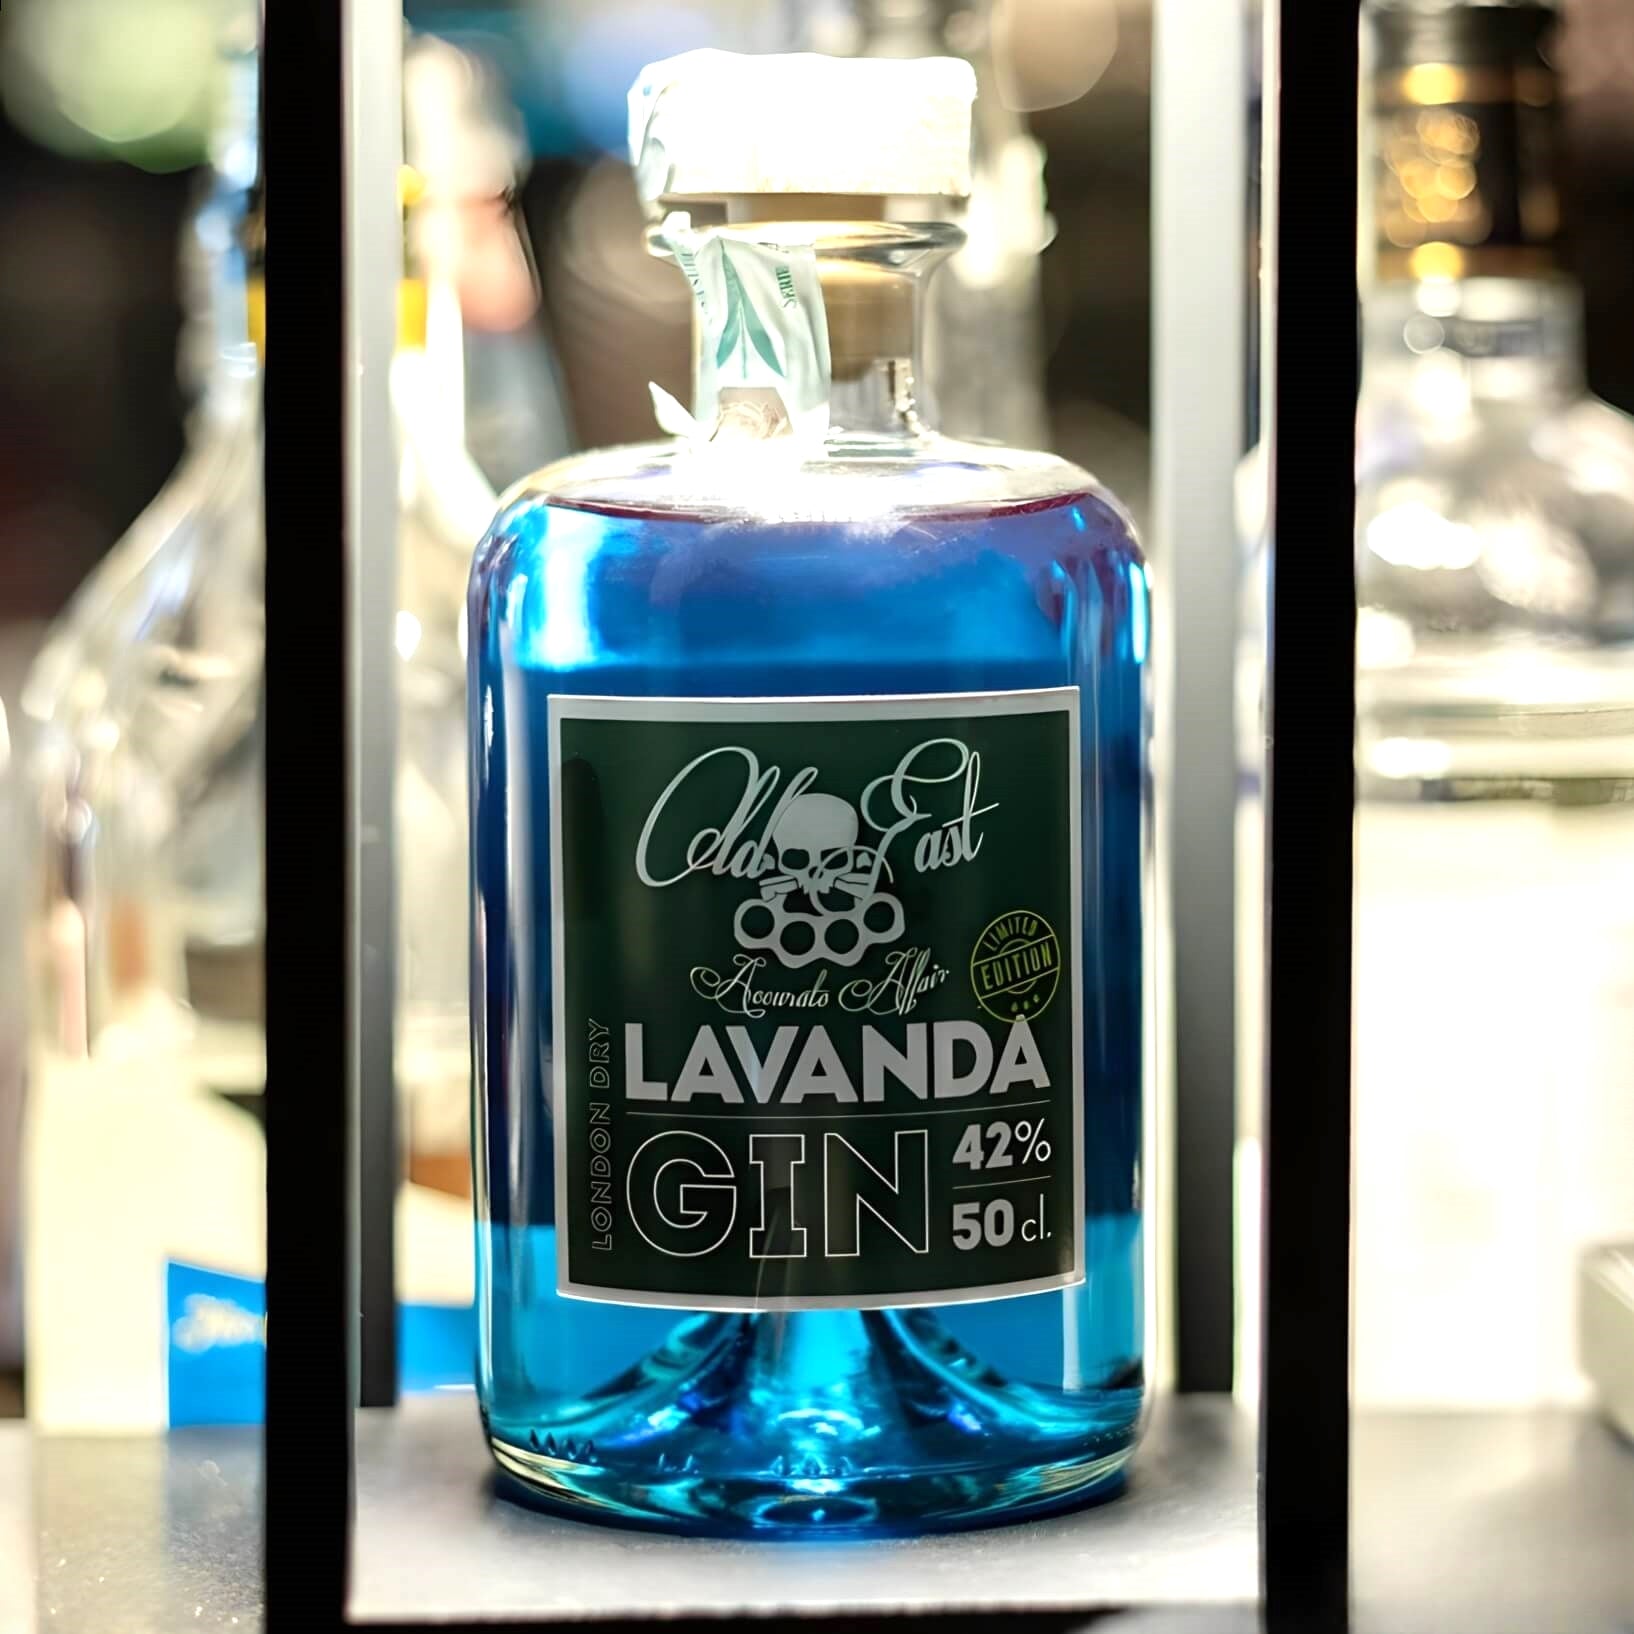 Made in Italy - Lavanda Gin